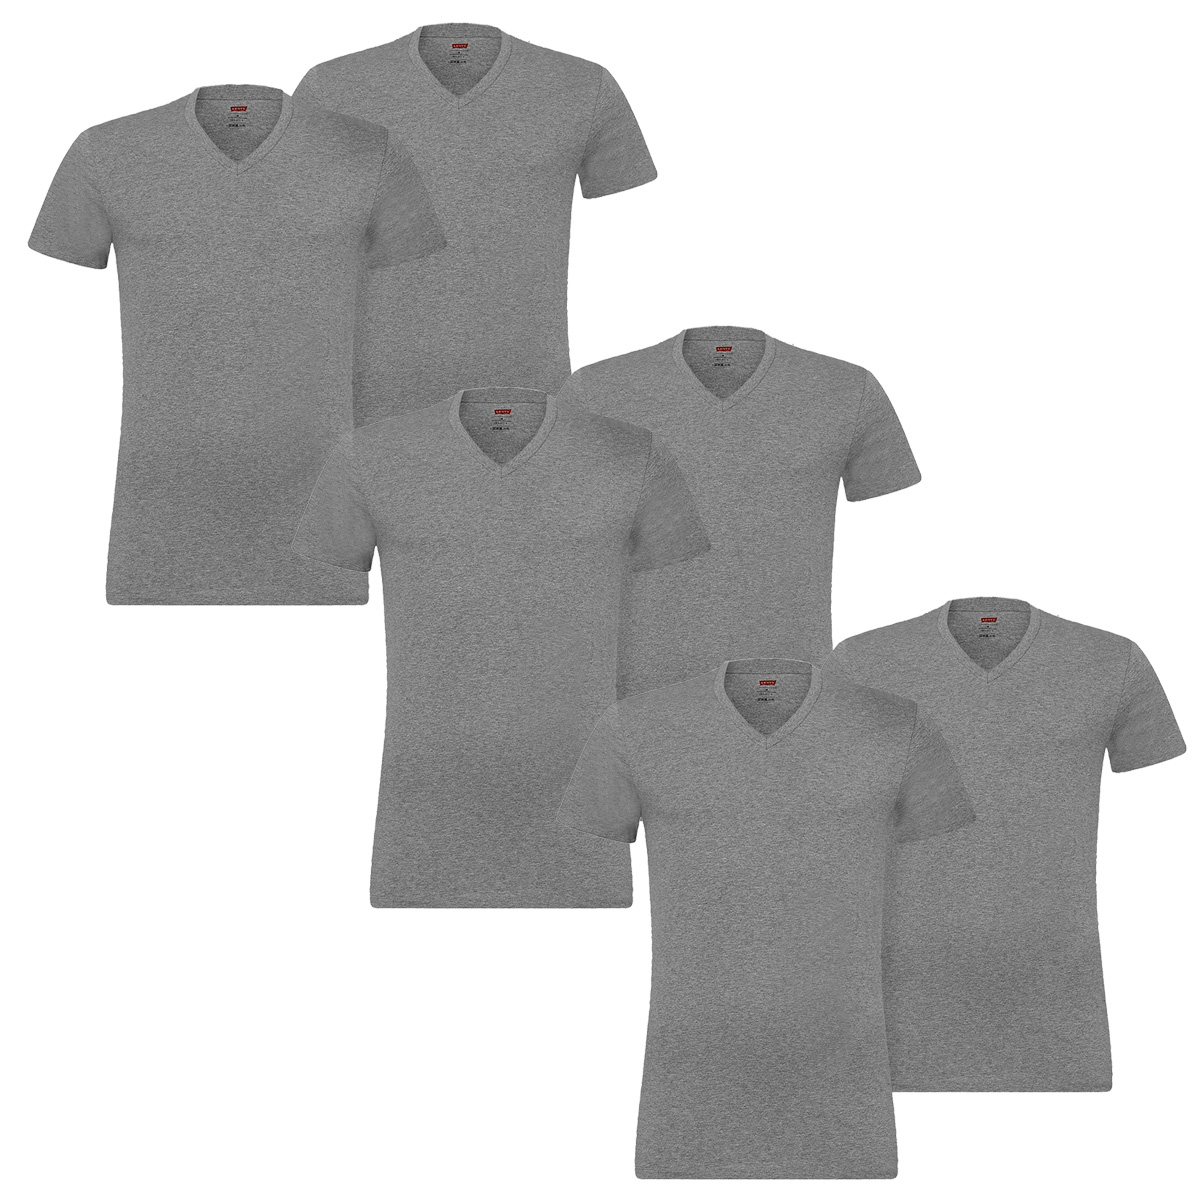 6 er Pack Levis V-Neck T-Shirt Men Herren Unterhemd V-Ausschnitt